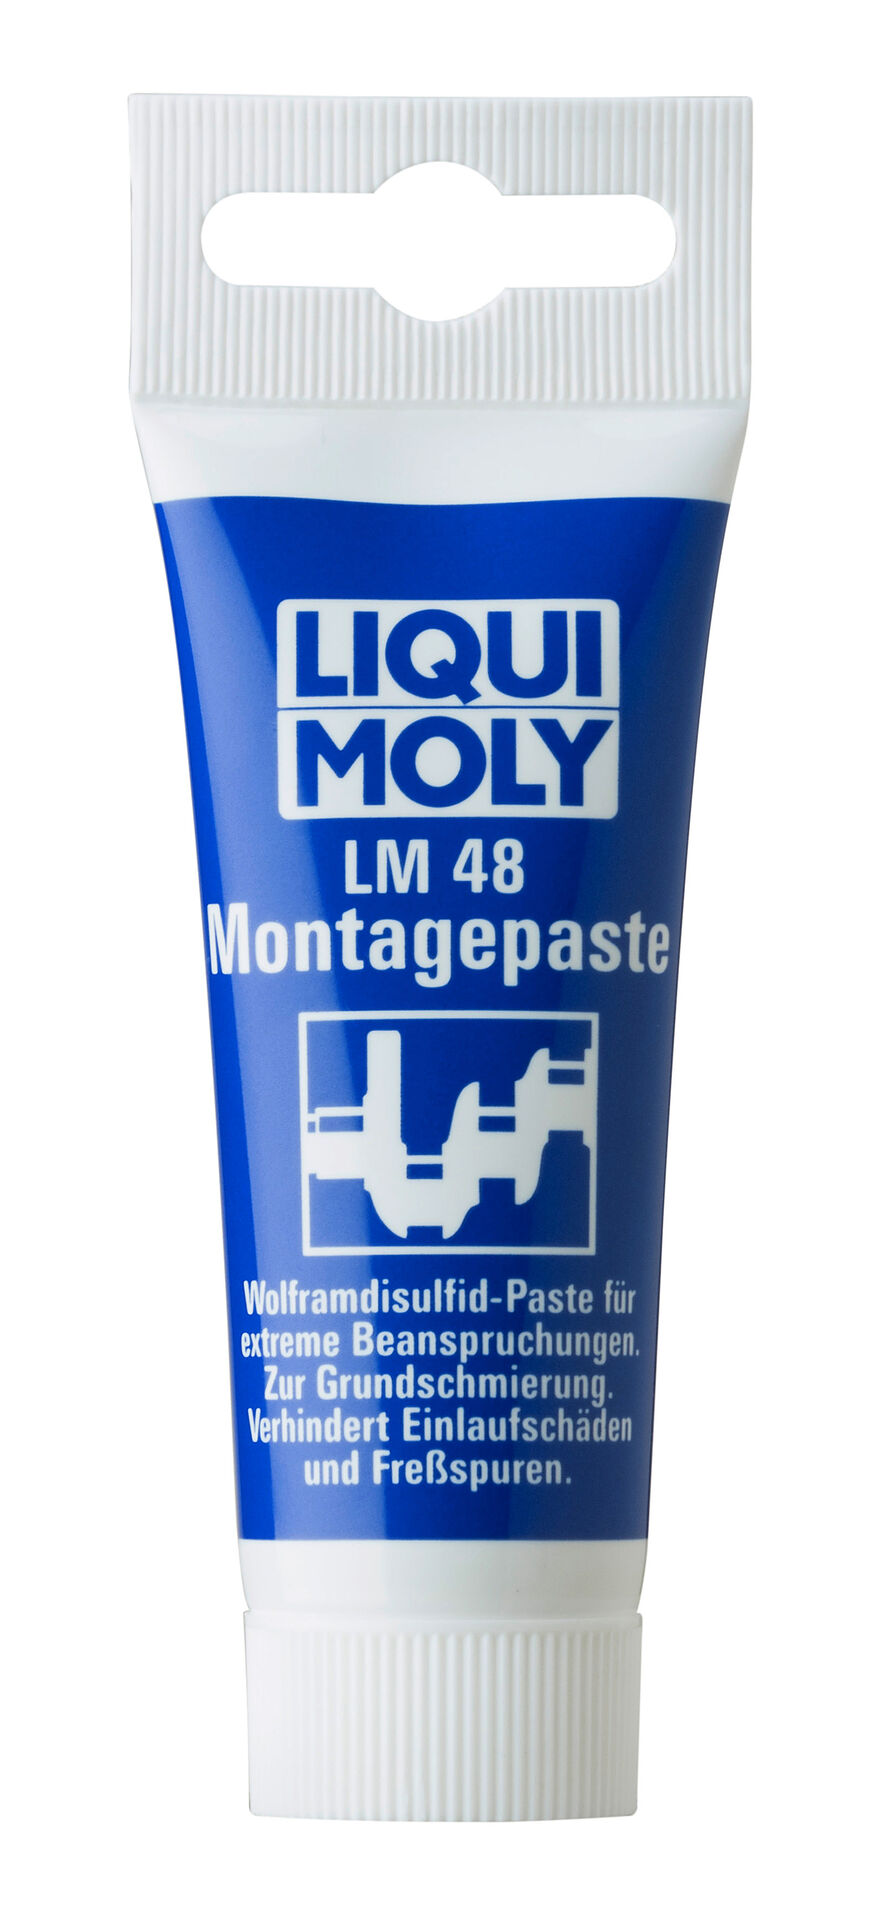 Liqui Moly 50g LM 48 Montagepaste Tube Kunststoff Wolframdisulfid-Paste